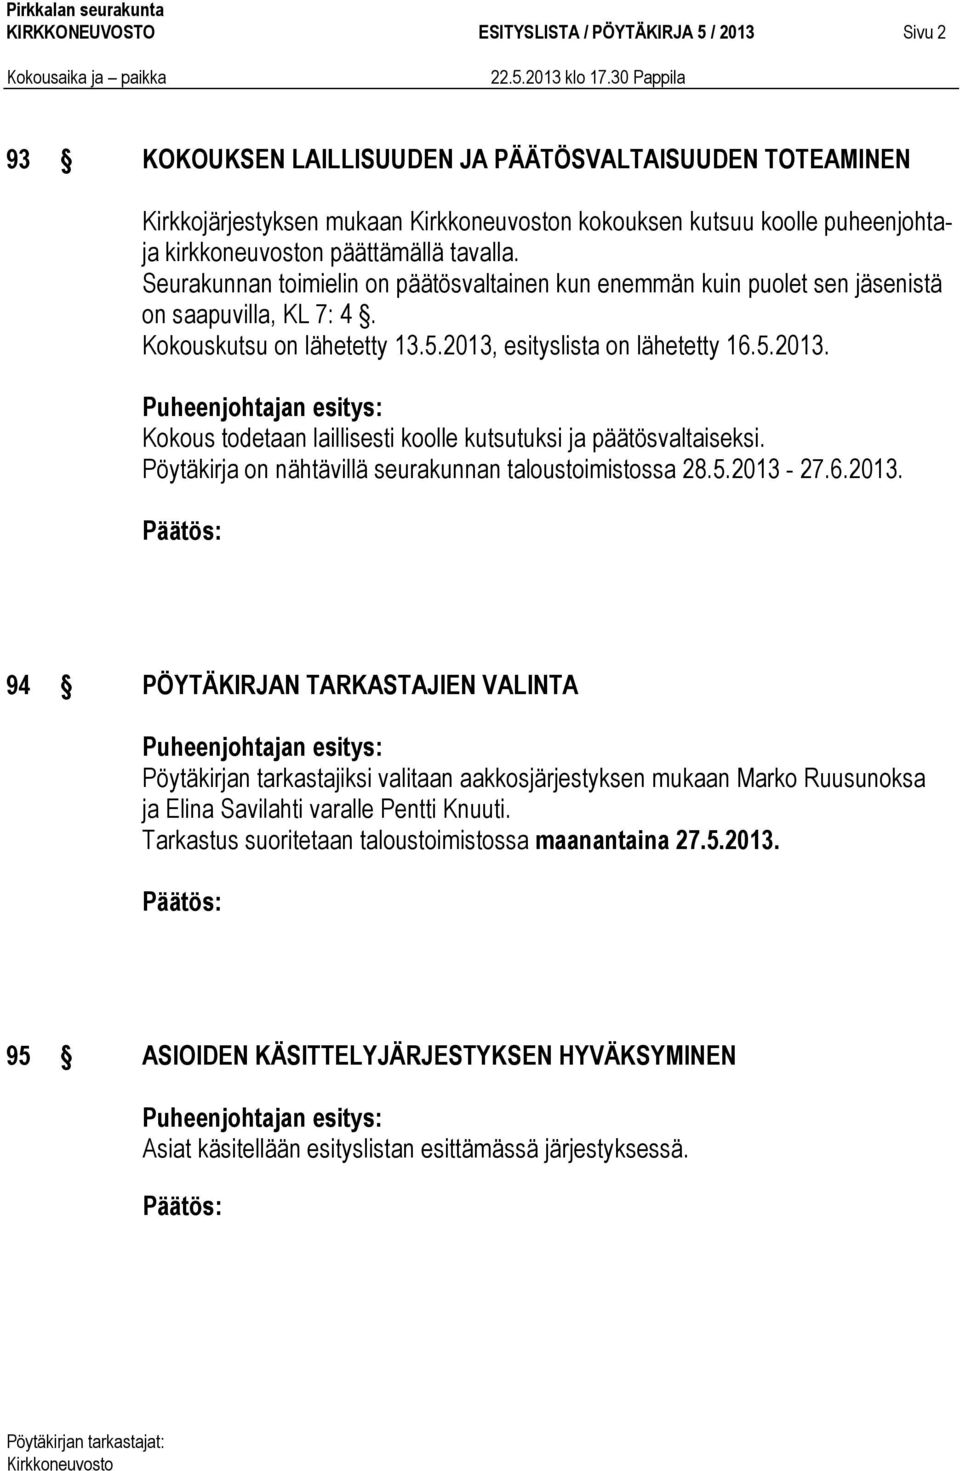 esityslista on lähetetty 16.5.2013. Kokous todetaan laillisesti koolle kutsutuksi ja päätösvaltaiseksi. Pöytäkirja on nähtävillä seurakunnan taloustoimistossa 28.5.2013-27.6.2013. 94 PÖYTÄKIRJAN TARKASTAJIEN VALINTA Pöytäkirjan tarkastajiksi valitaan aakkosjärjestyksen mukaan Marko Ruusunoksa ja Elina Savilahti varalle Pentti Knuuti.